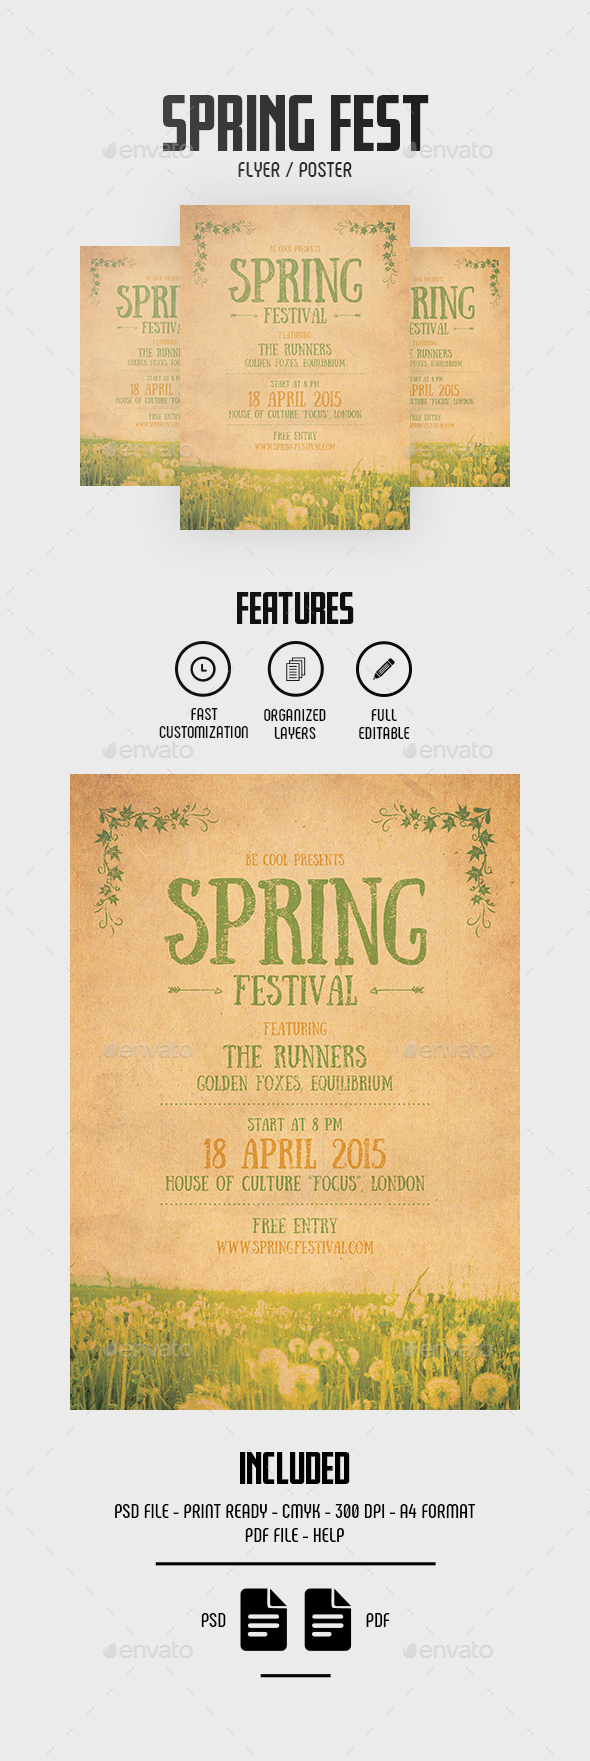 Spring Festival Flyer/Poster